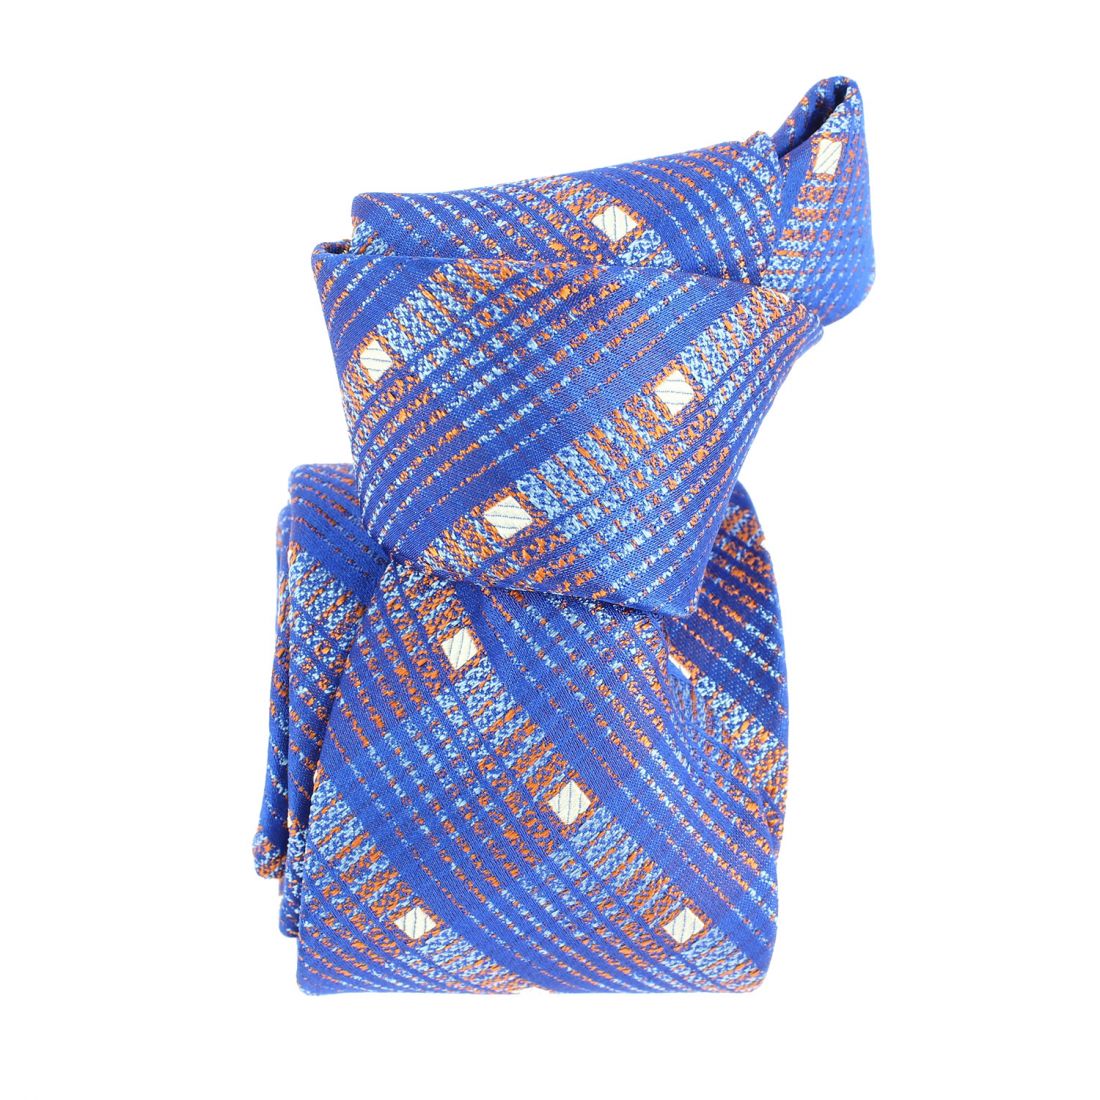 Cravate étoile, Sully Bleu, Boivin atelier Parisien BOIVIN Atelier Parisien depuis 1920